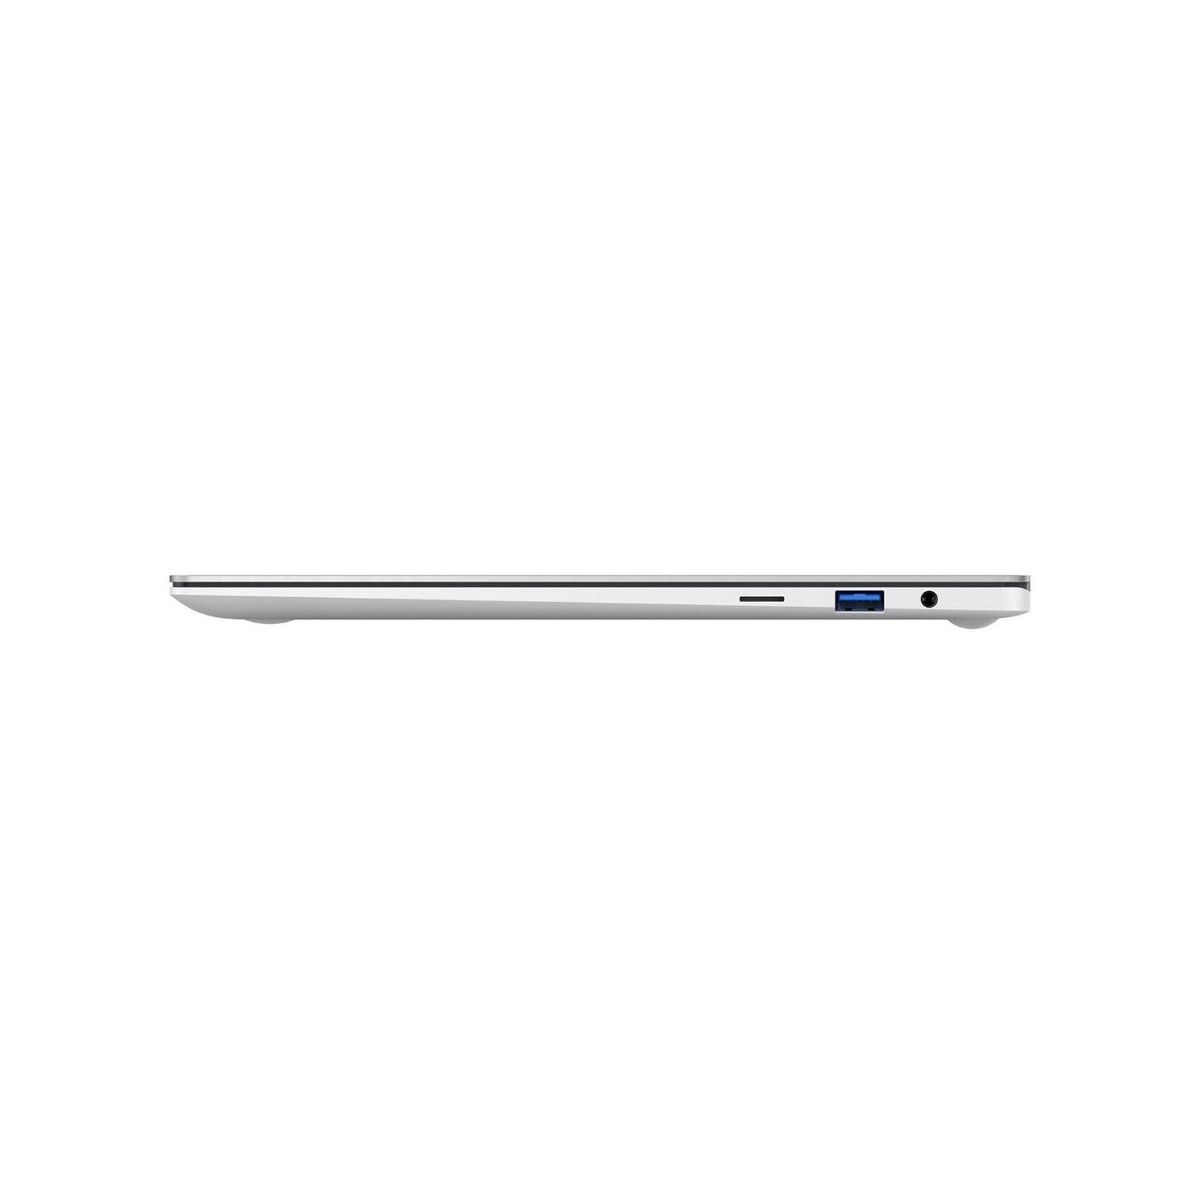 Samsung Galaxy Book Pro 15.6" Laptop FHD i5-1135G7 8GB 256GB